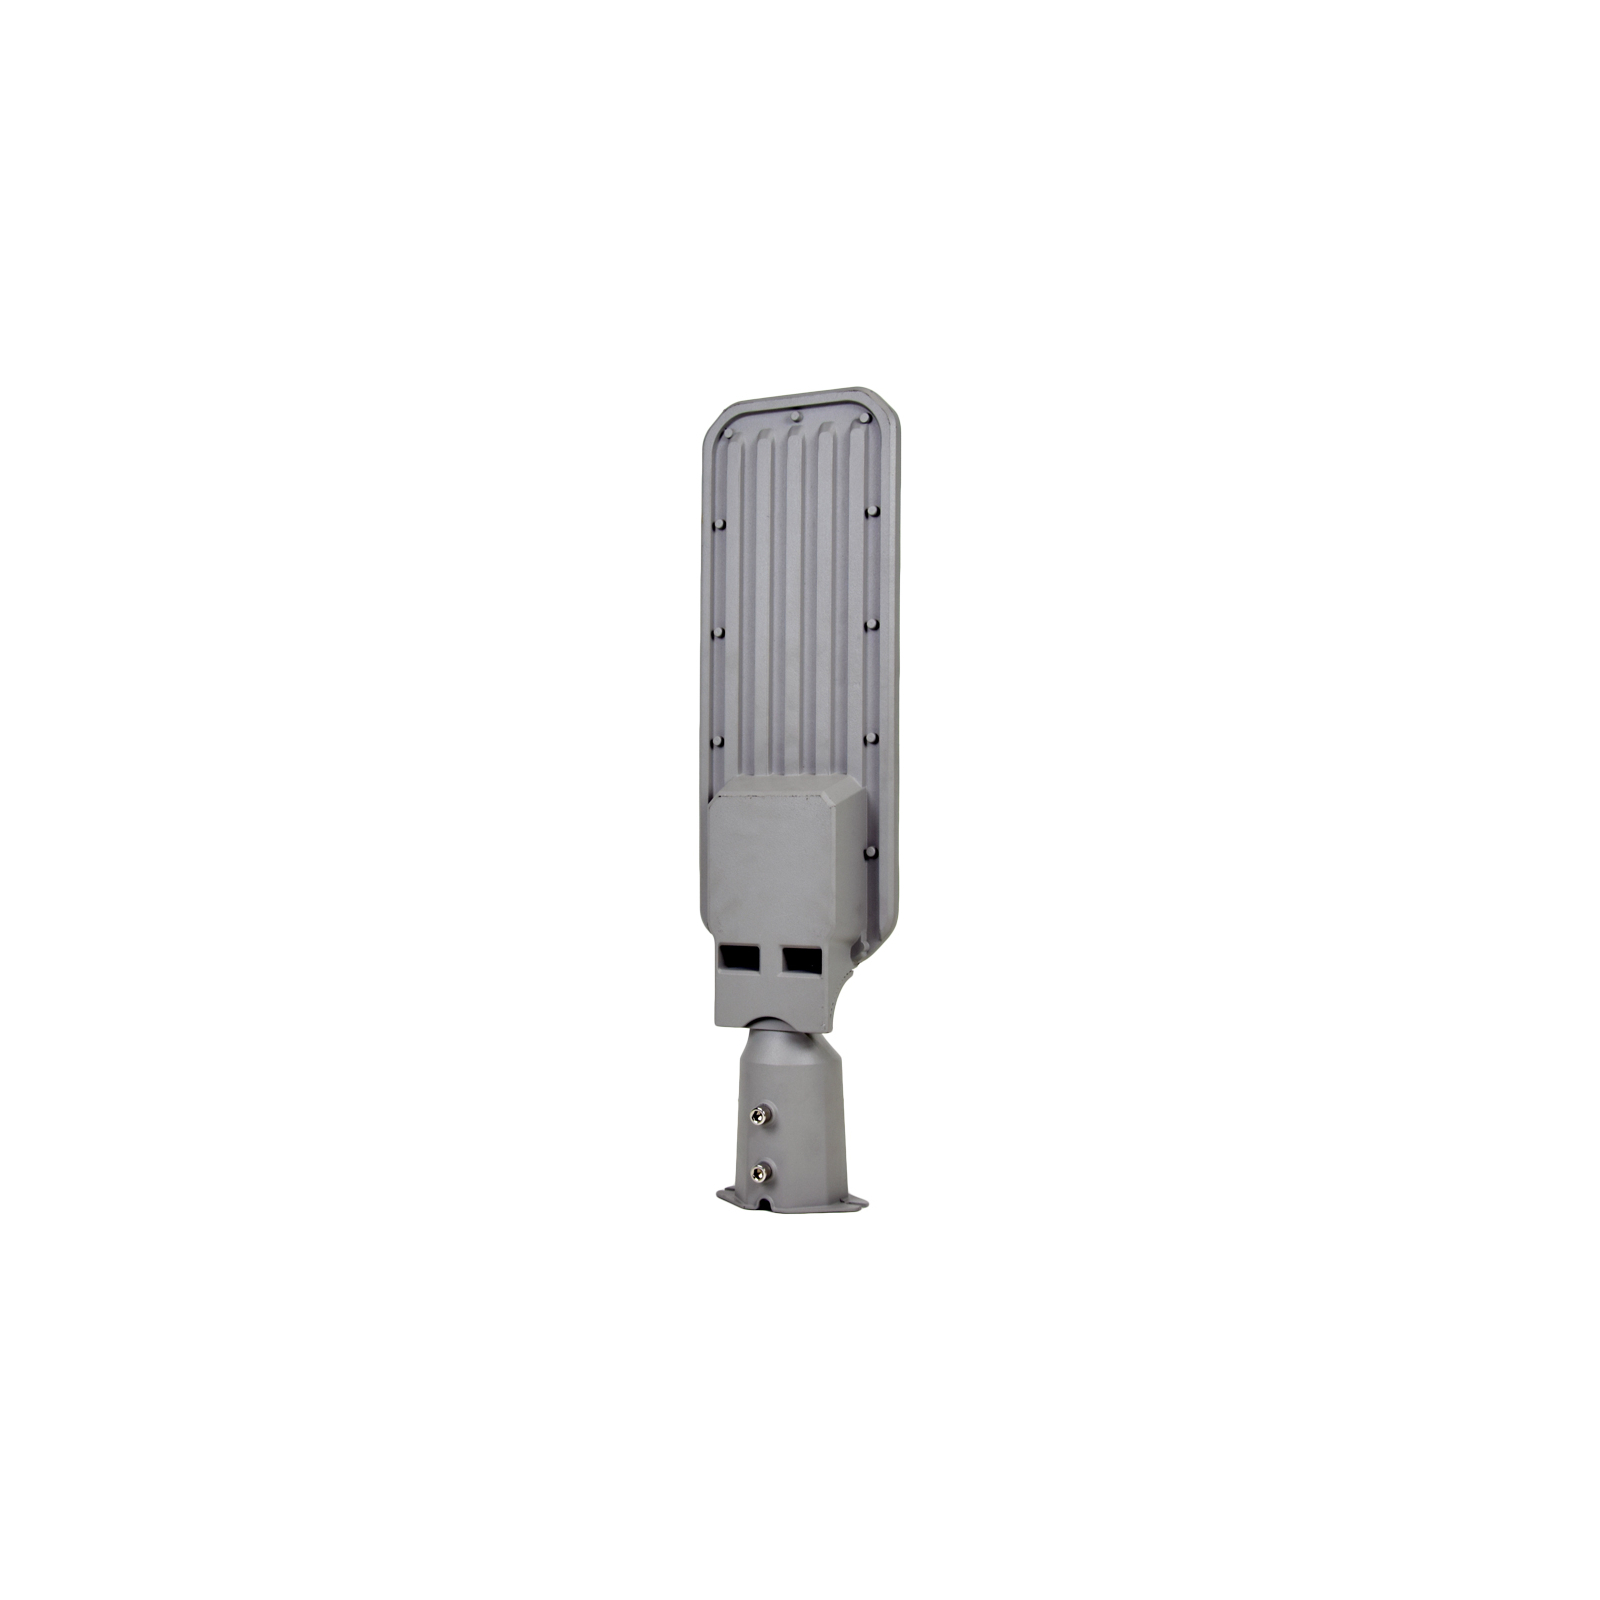 Прожектор Lightwell ZY-DY11-65K-200W (265956) изображение 2